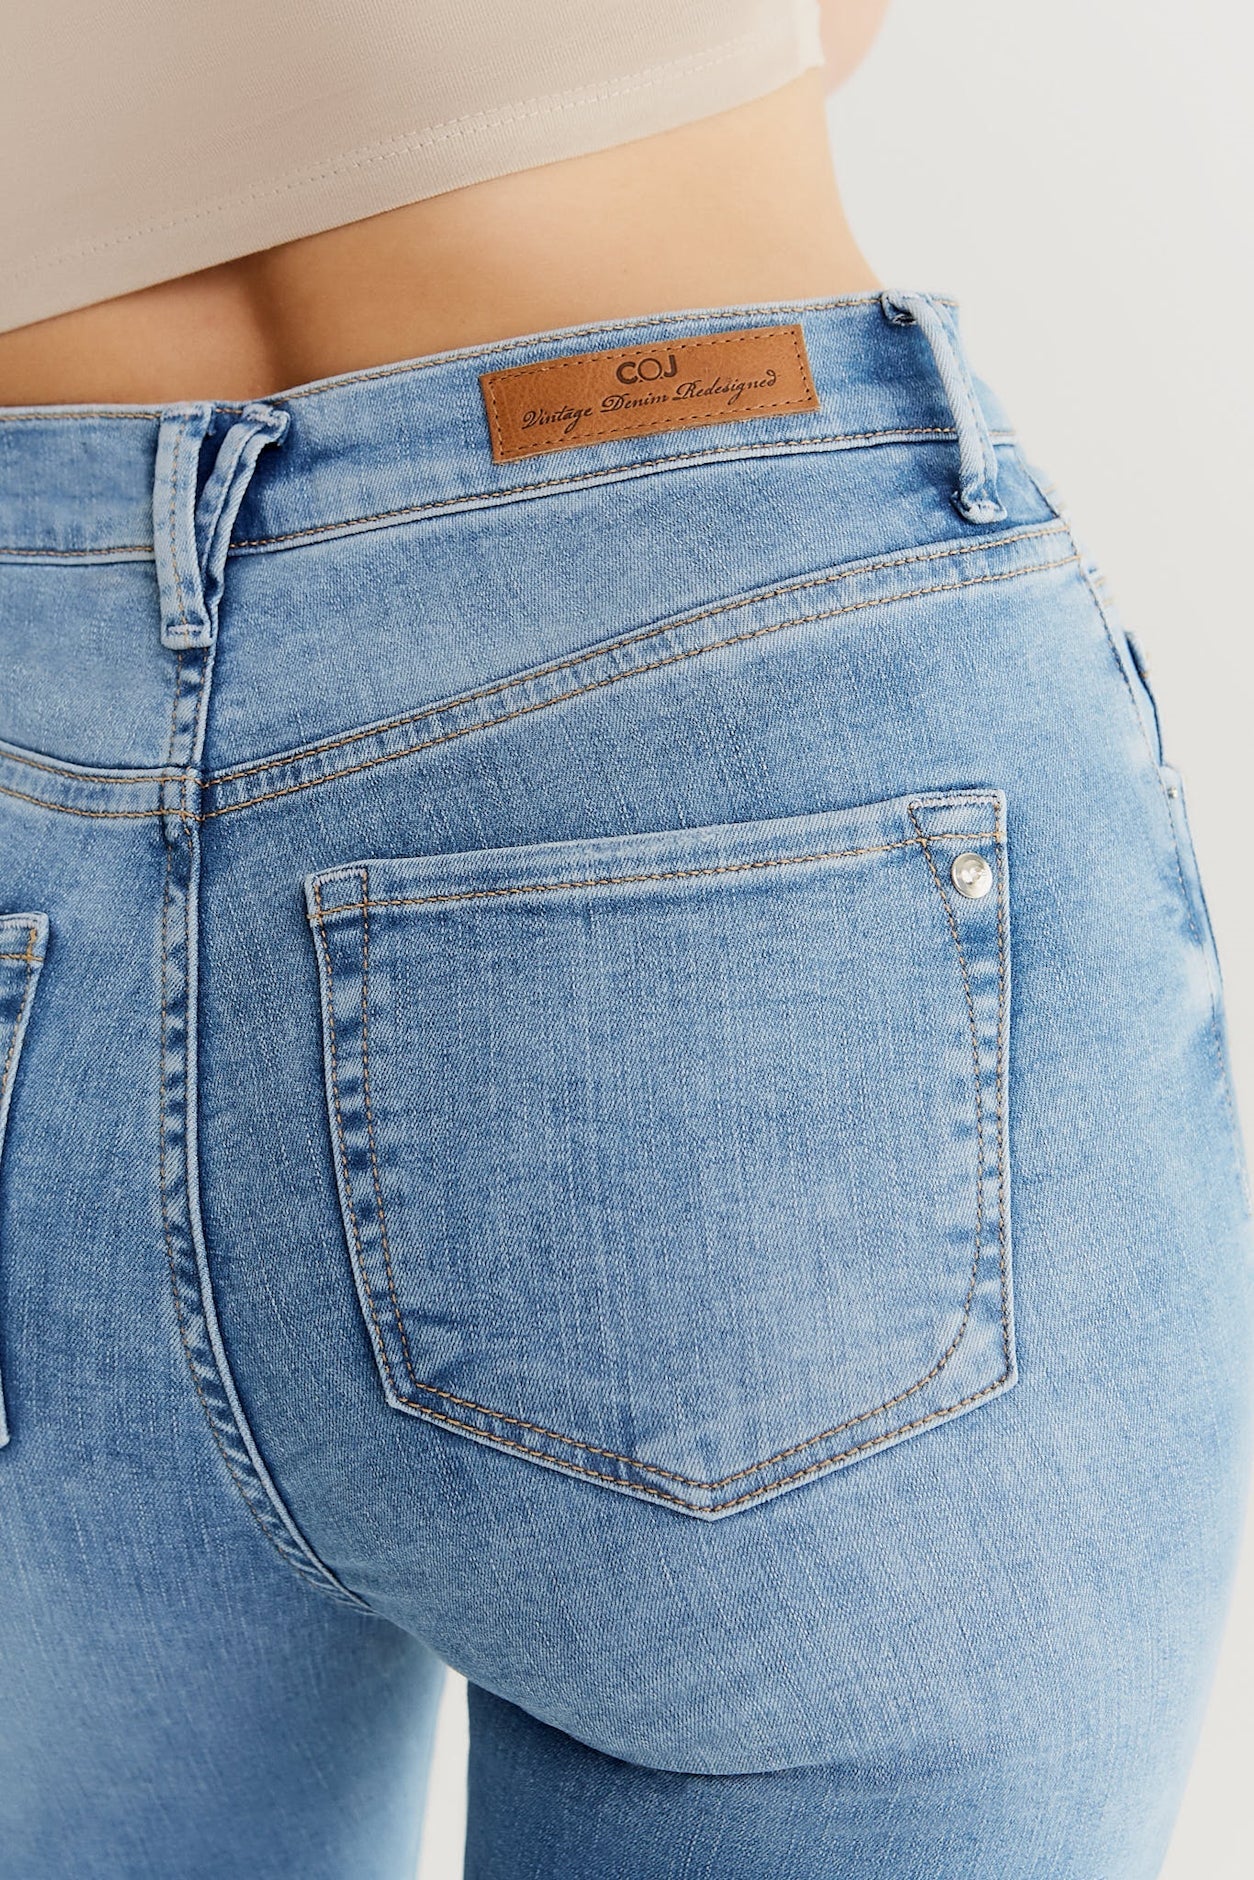 Lisa – Ultra High Waist Skinny Jeans – Hellblau